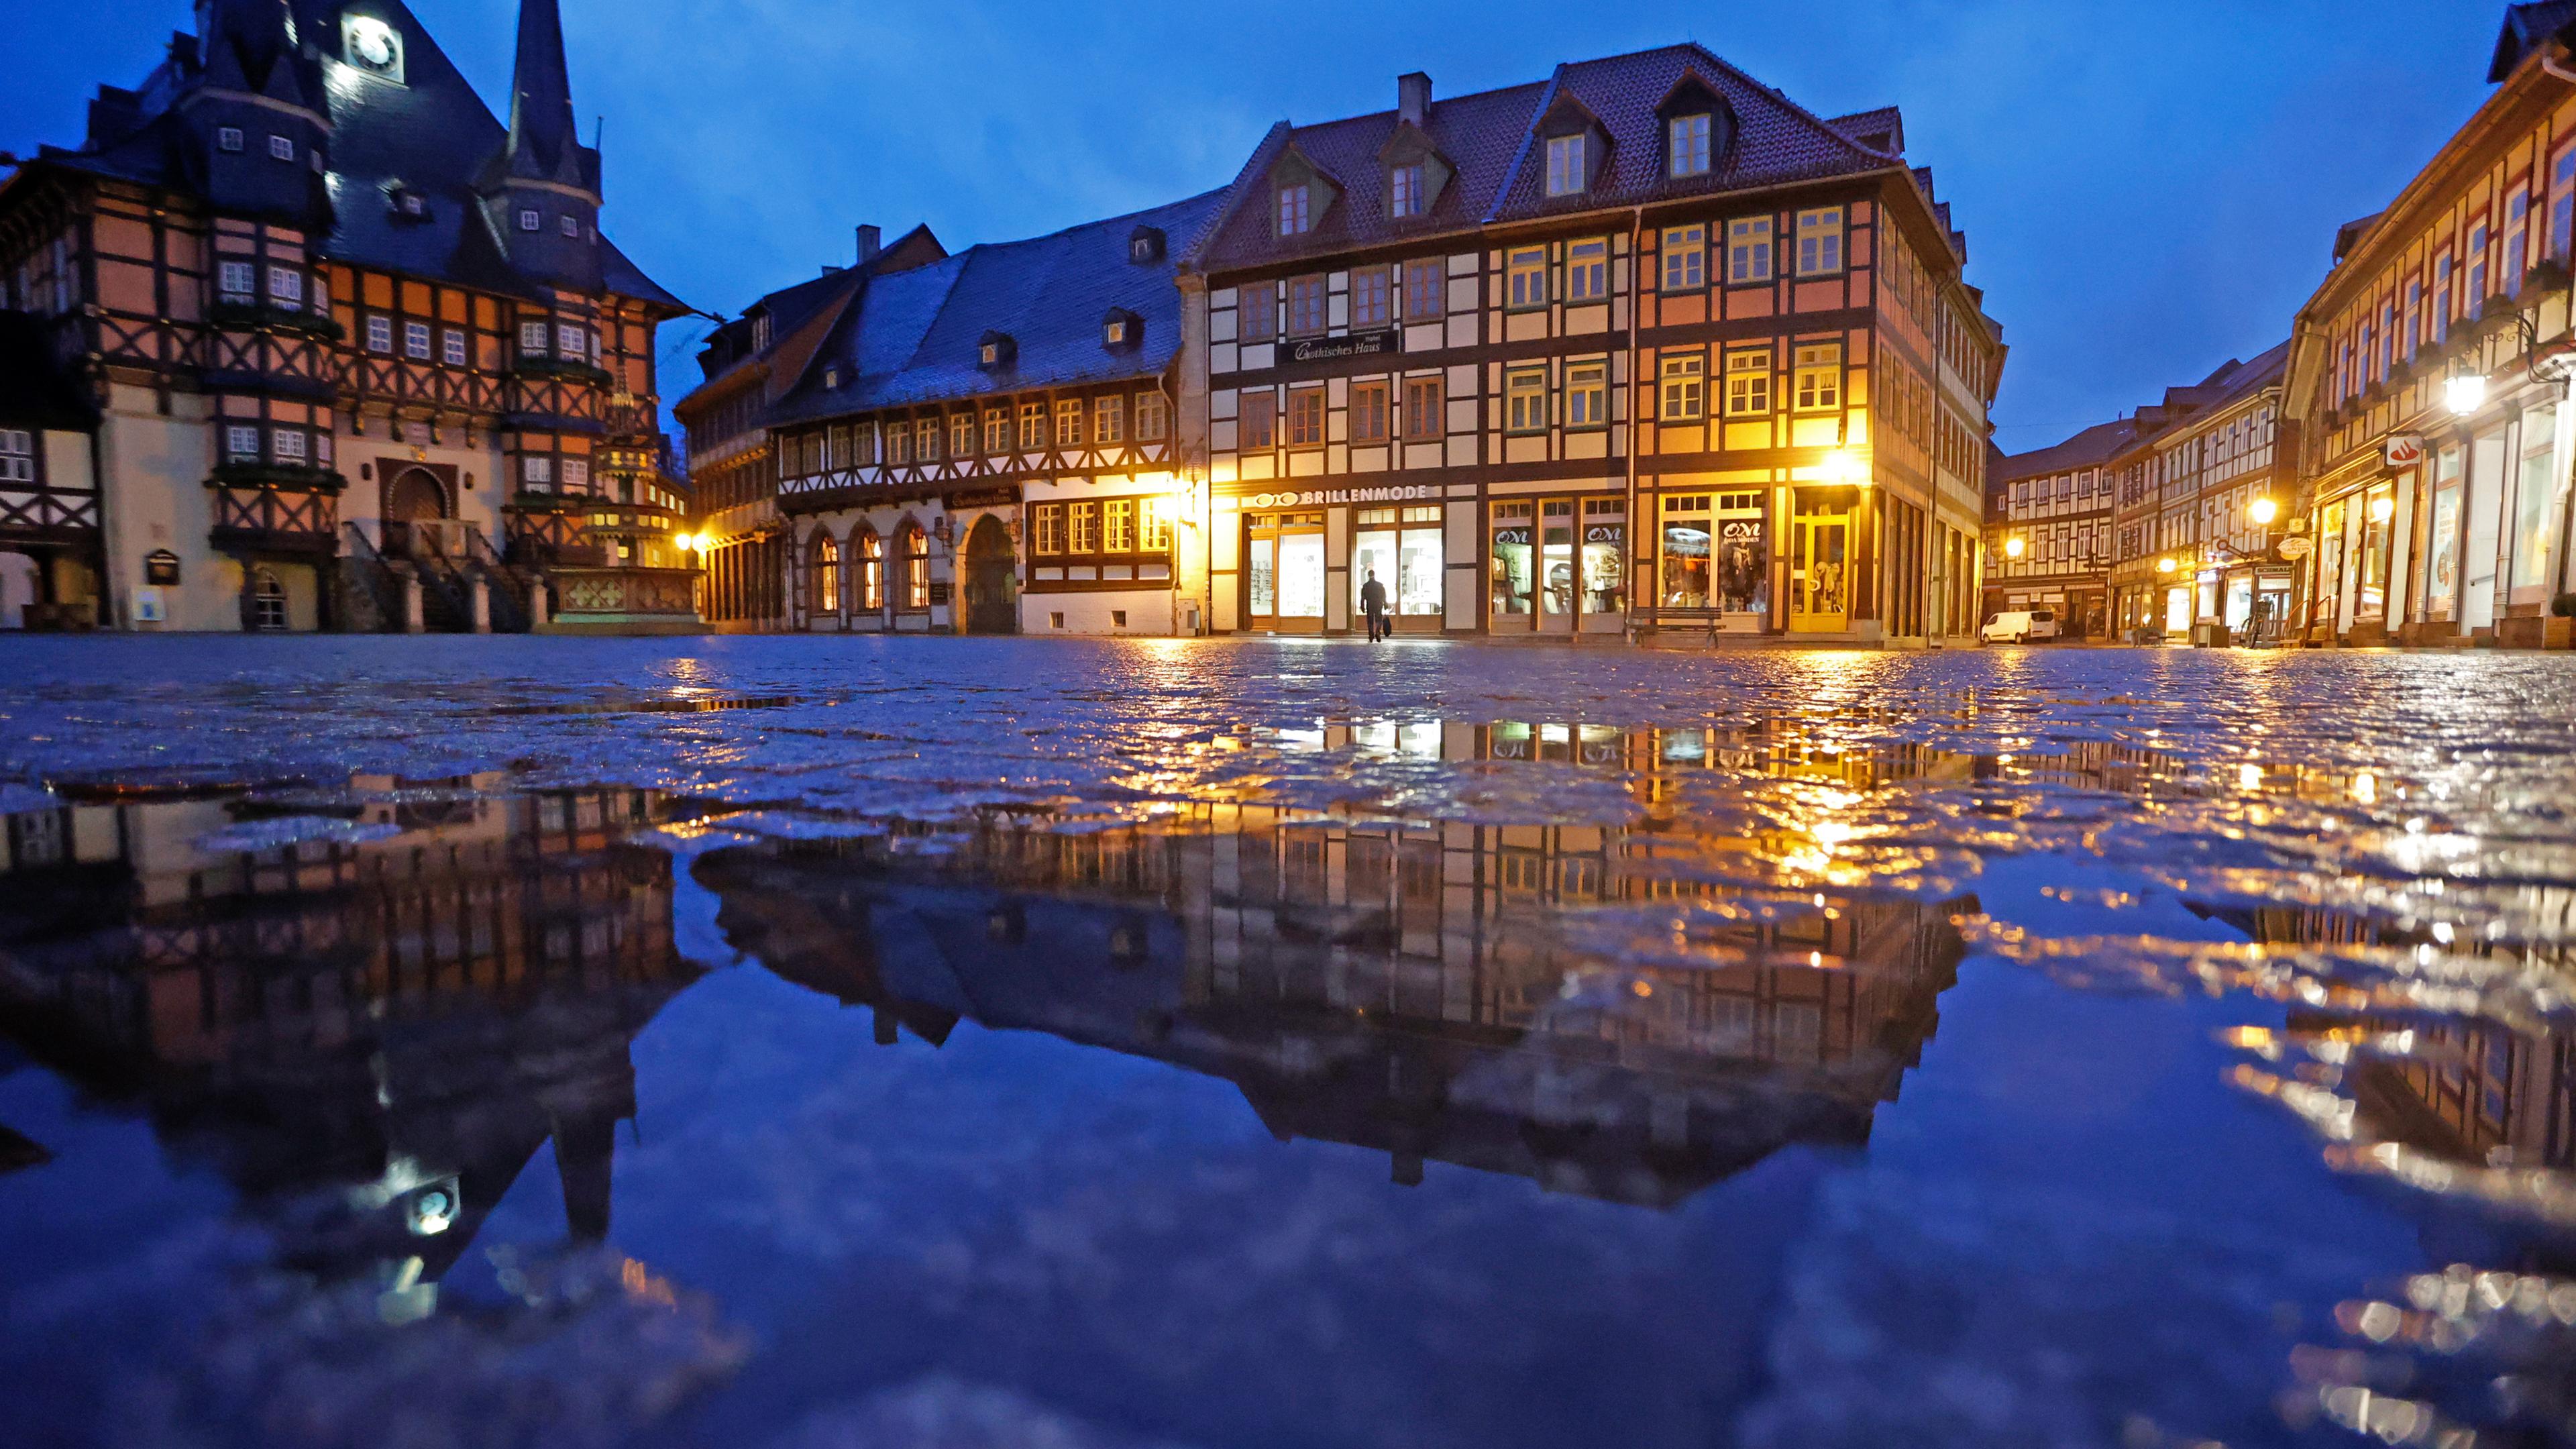 Sachsen-Anhalt, Wernigerode: Das Rathaus in Wernigerode spiegelt sich am frühen Morgen in einer Regenpfütze auf dem Marktplatz